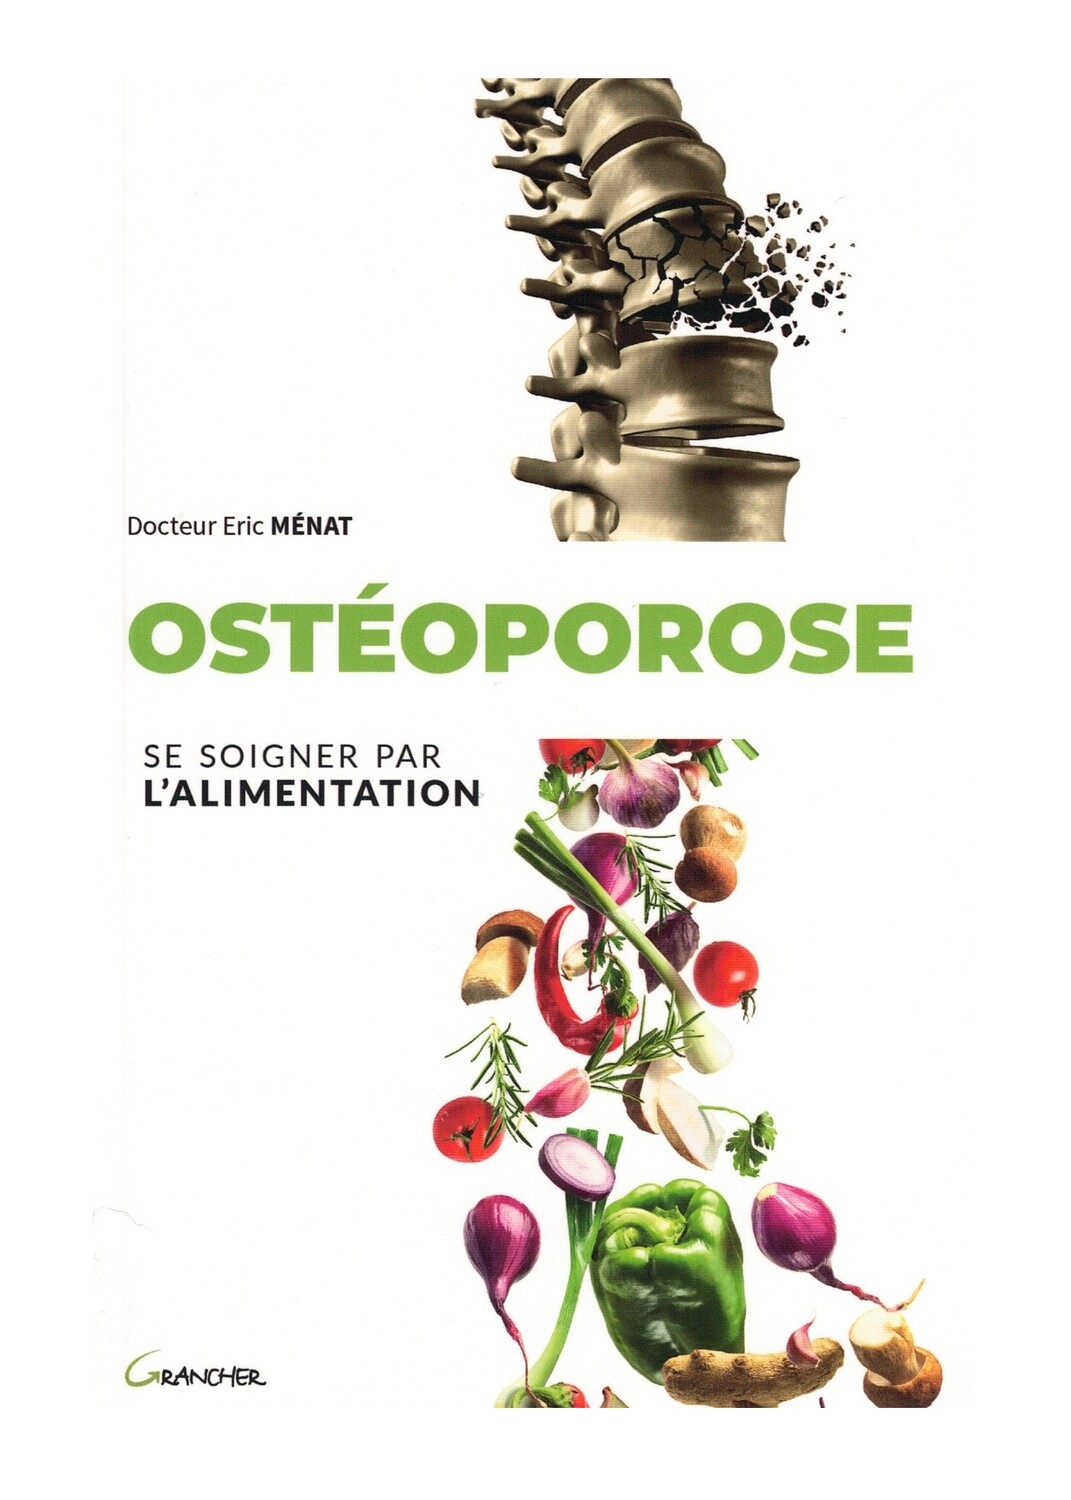 Ostéoporose se soigner par l'alimentation